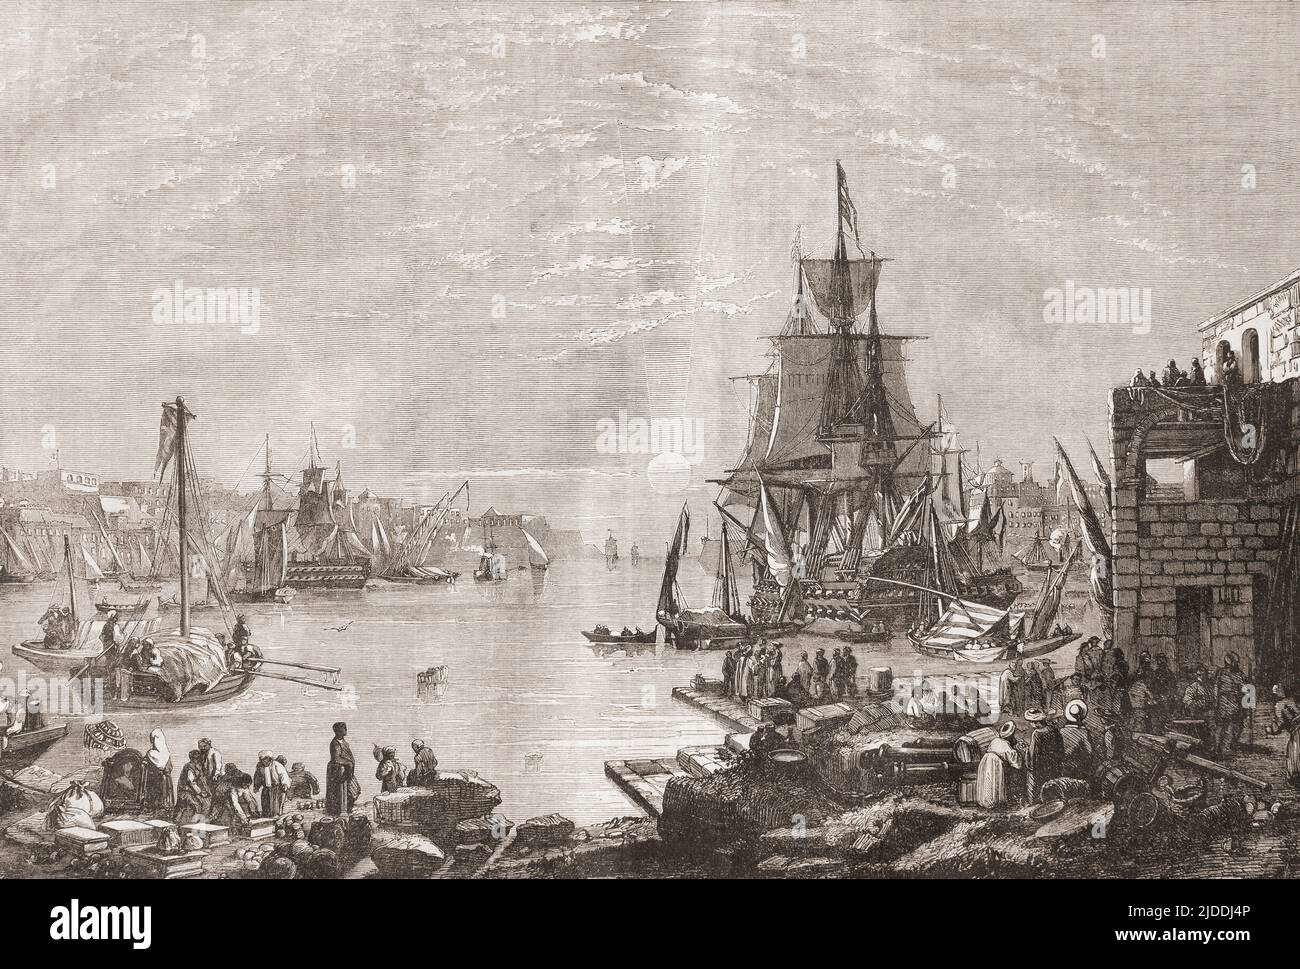 Il Grand Harbour, la Valletta, Malta, visto qui nel 19th secolo. Da l'Univers Illustre, pubblicato Parigi, 1859 Foto Stock